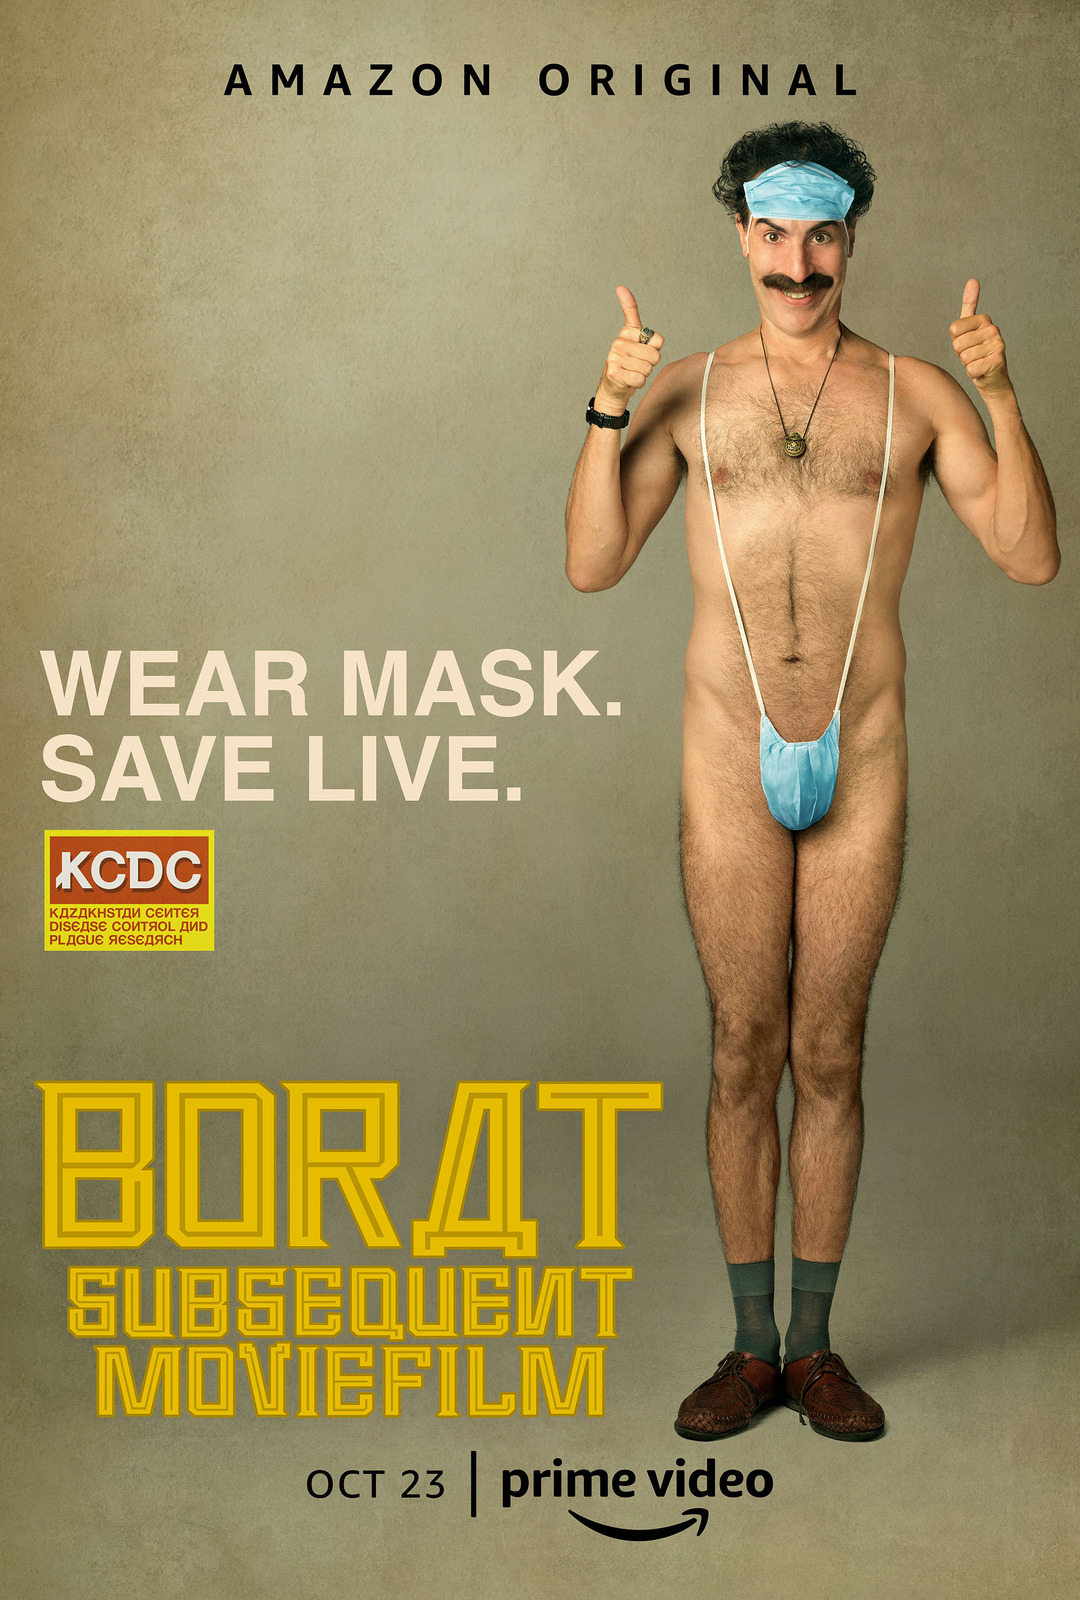 Borat Subsequent Moviefilm Poster Borat 2 Sacha Baron Cohen Art Film Print 27x40